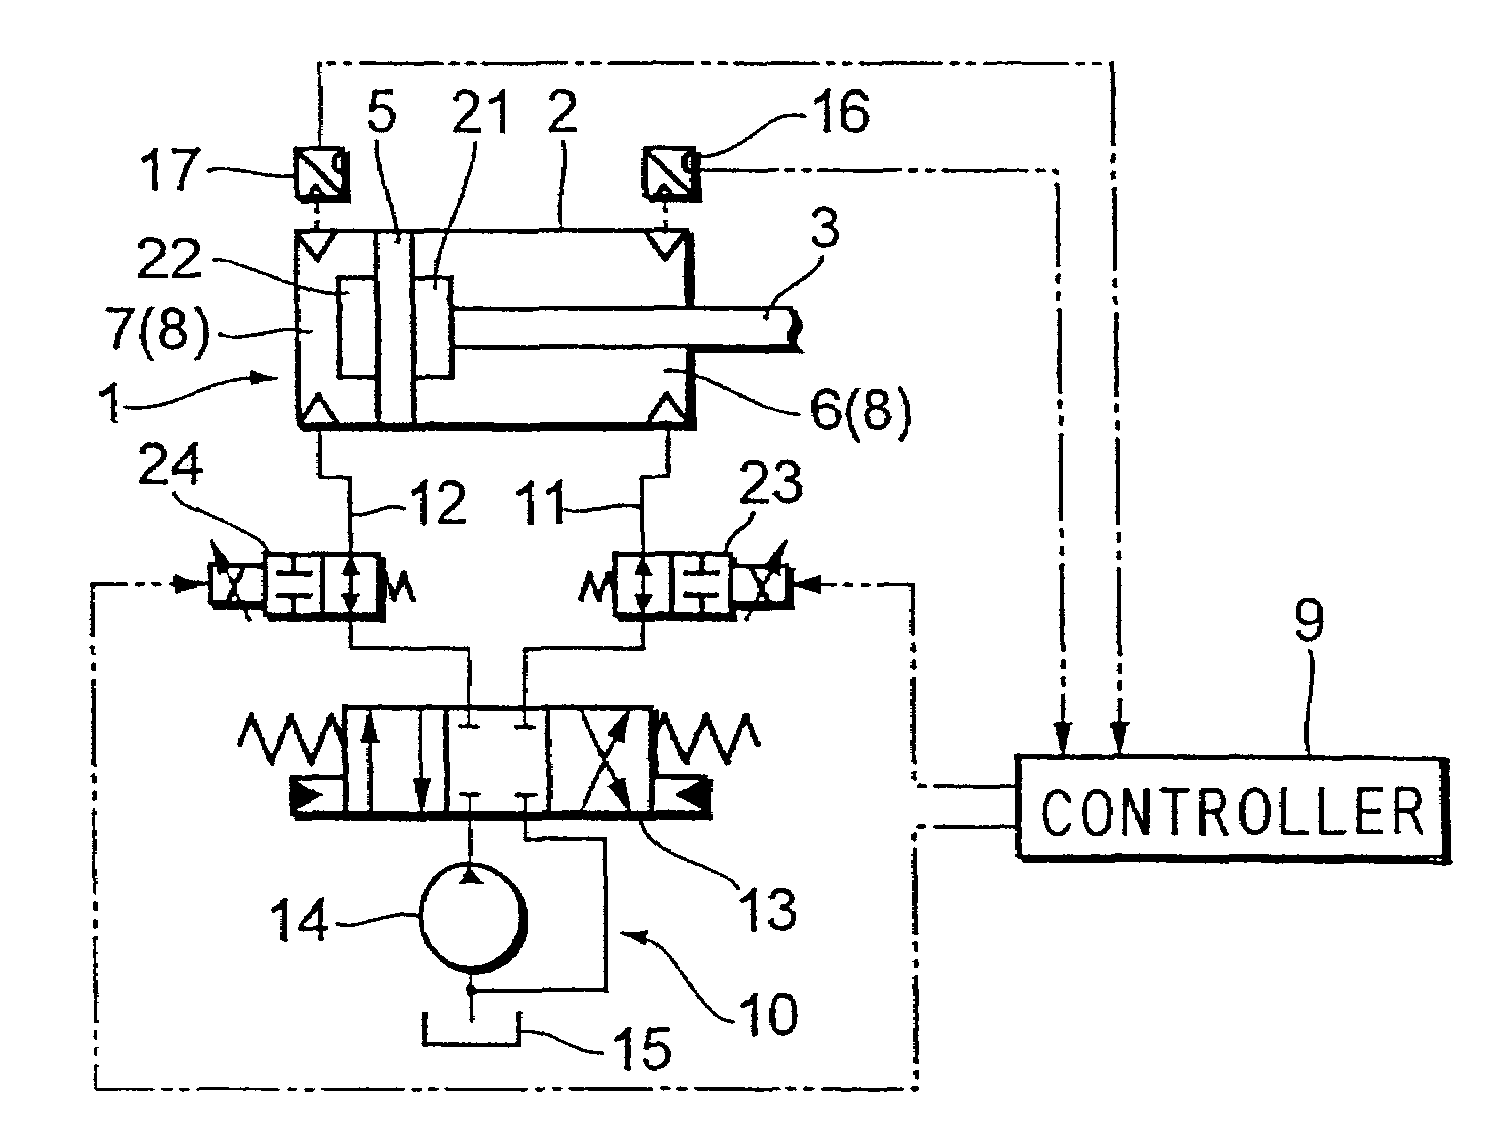 Control apparatus for hydraulic cylinder